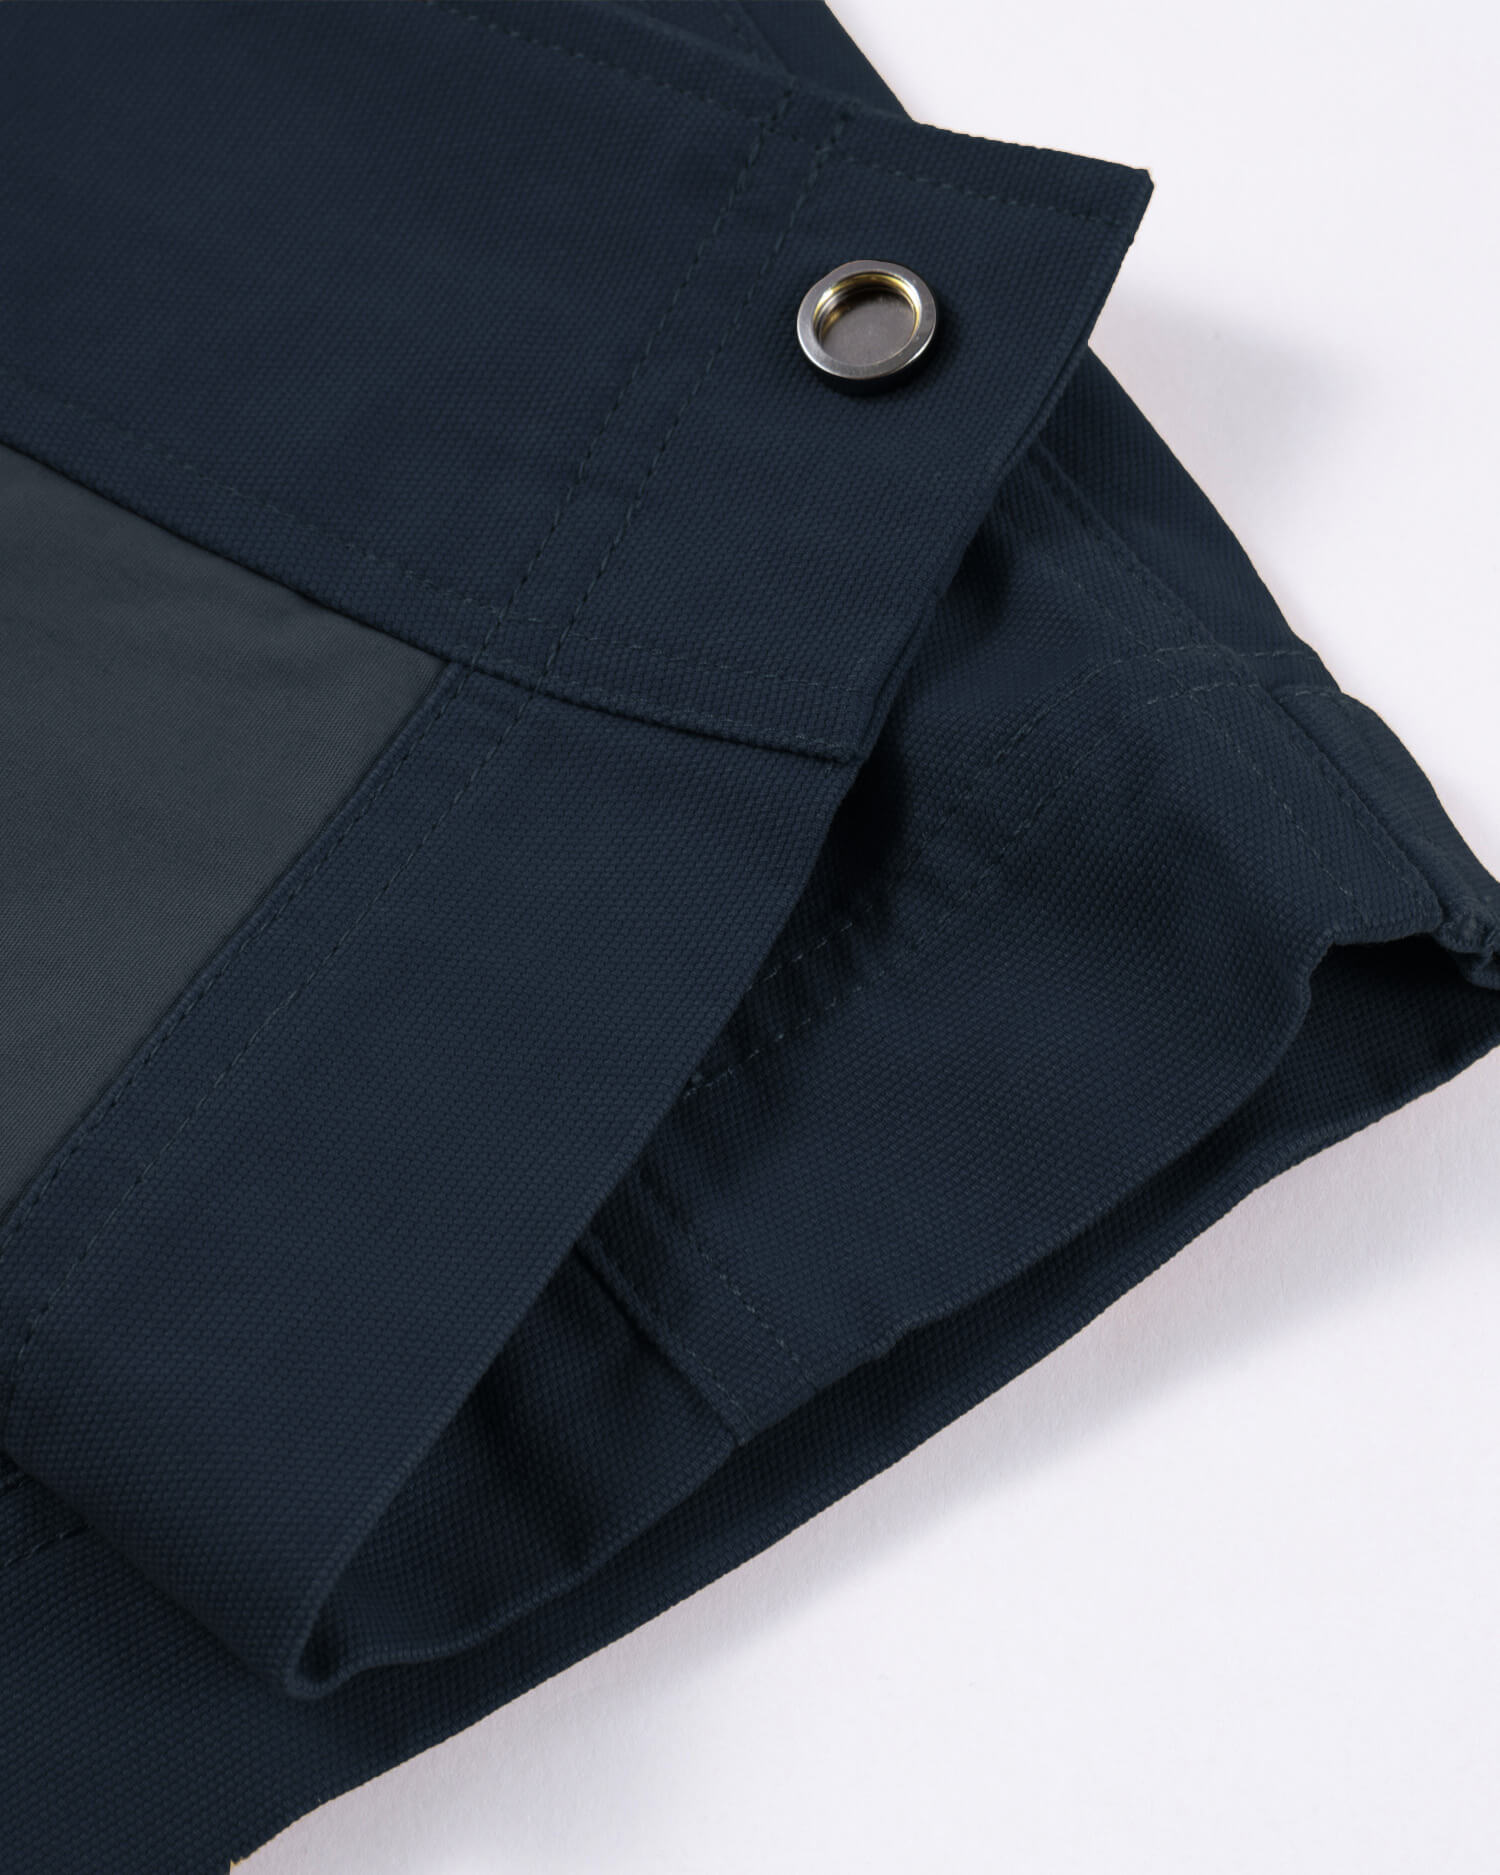 Men's Chore Jacket in Dark Blue 09 #dark-blue